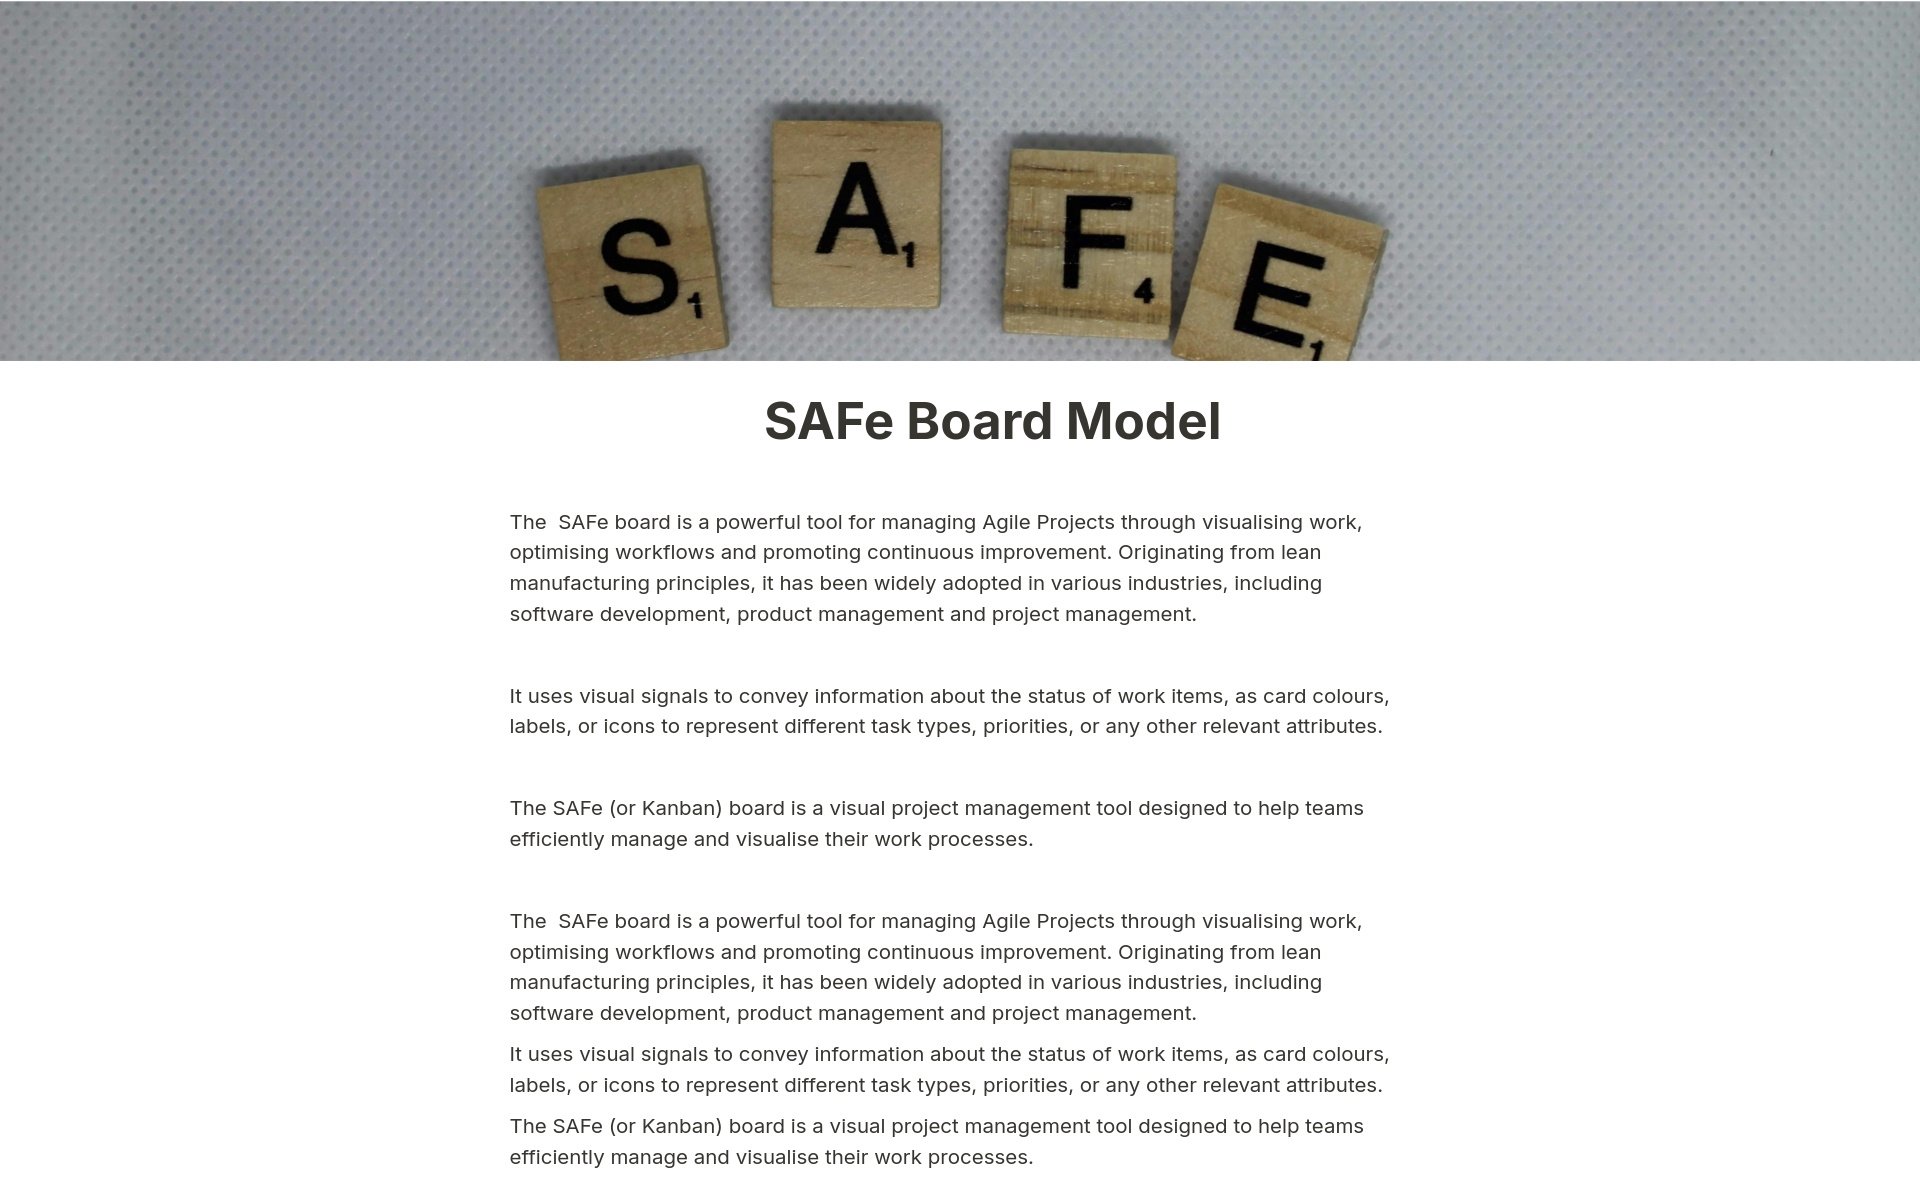 Uma prévia do modelo para SAFe Board Model